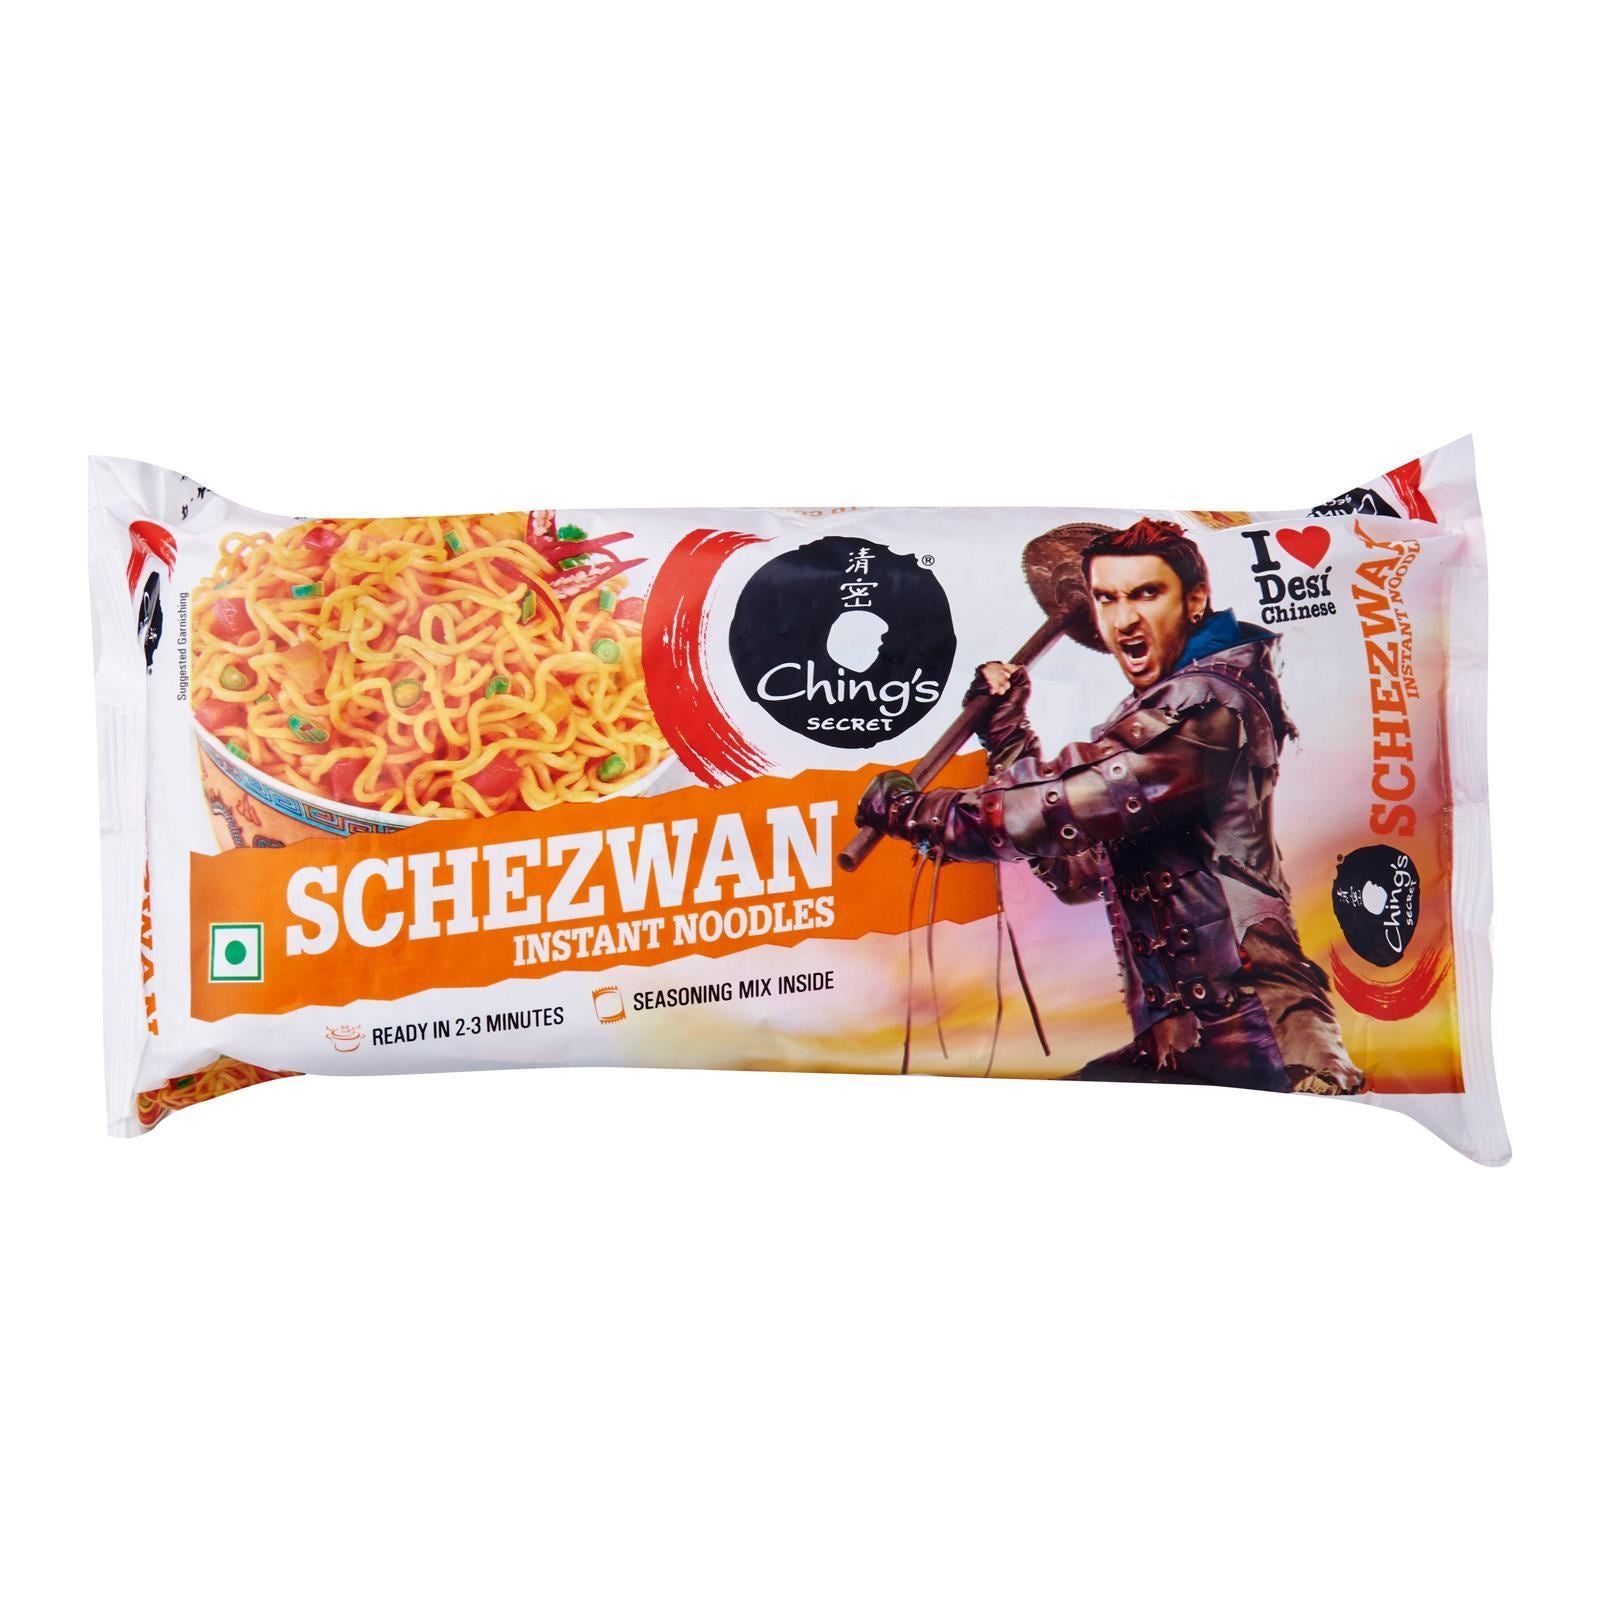 Ching's Schezwan Noodles